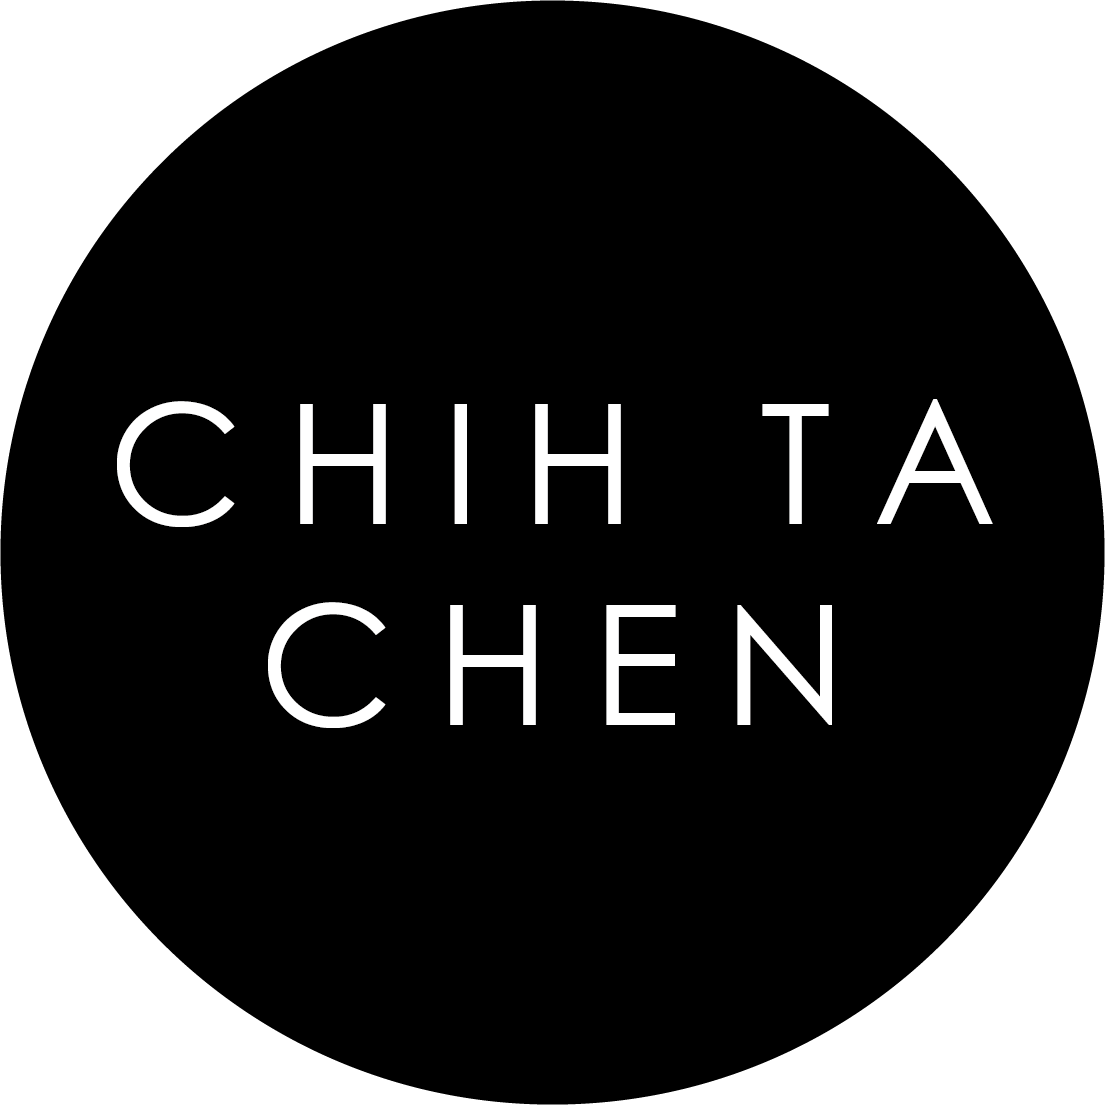 chih-ta-chen